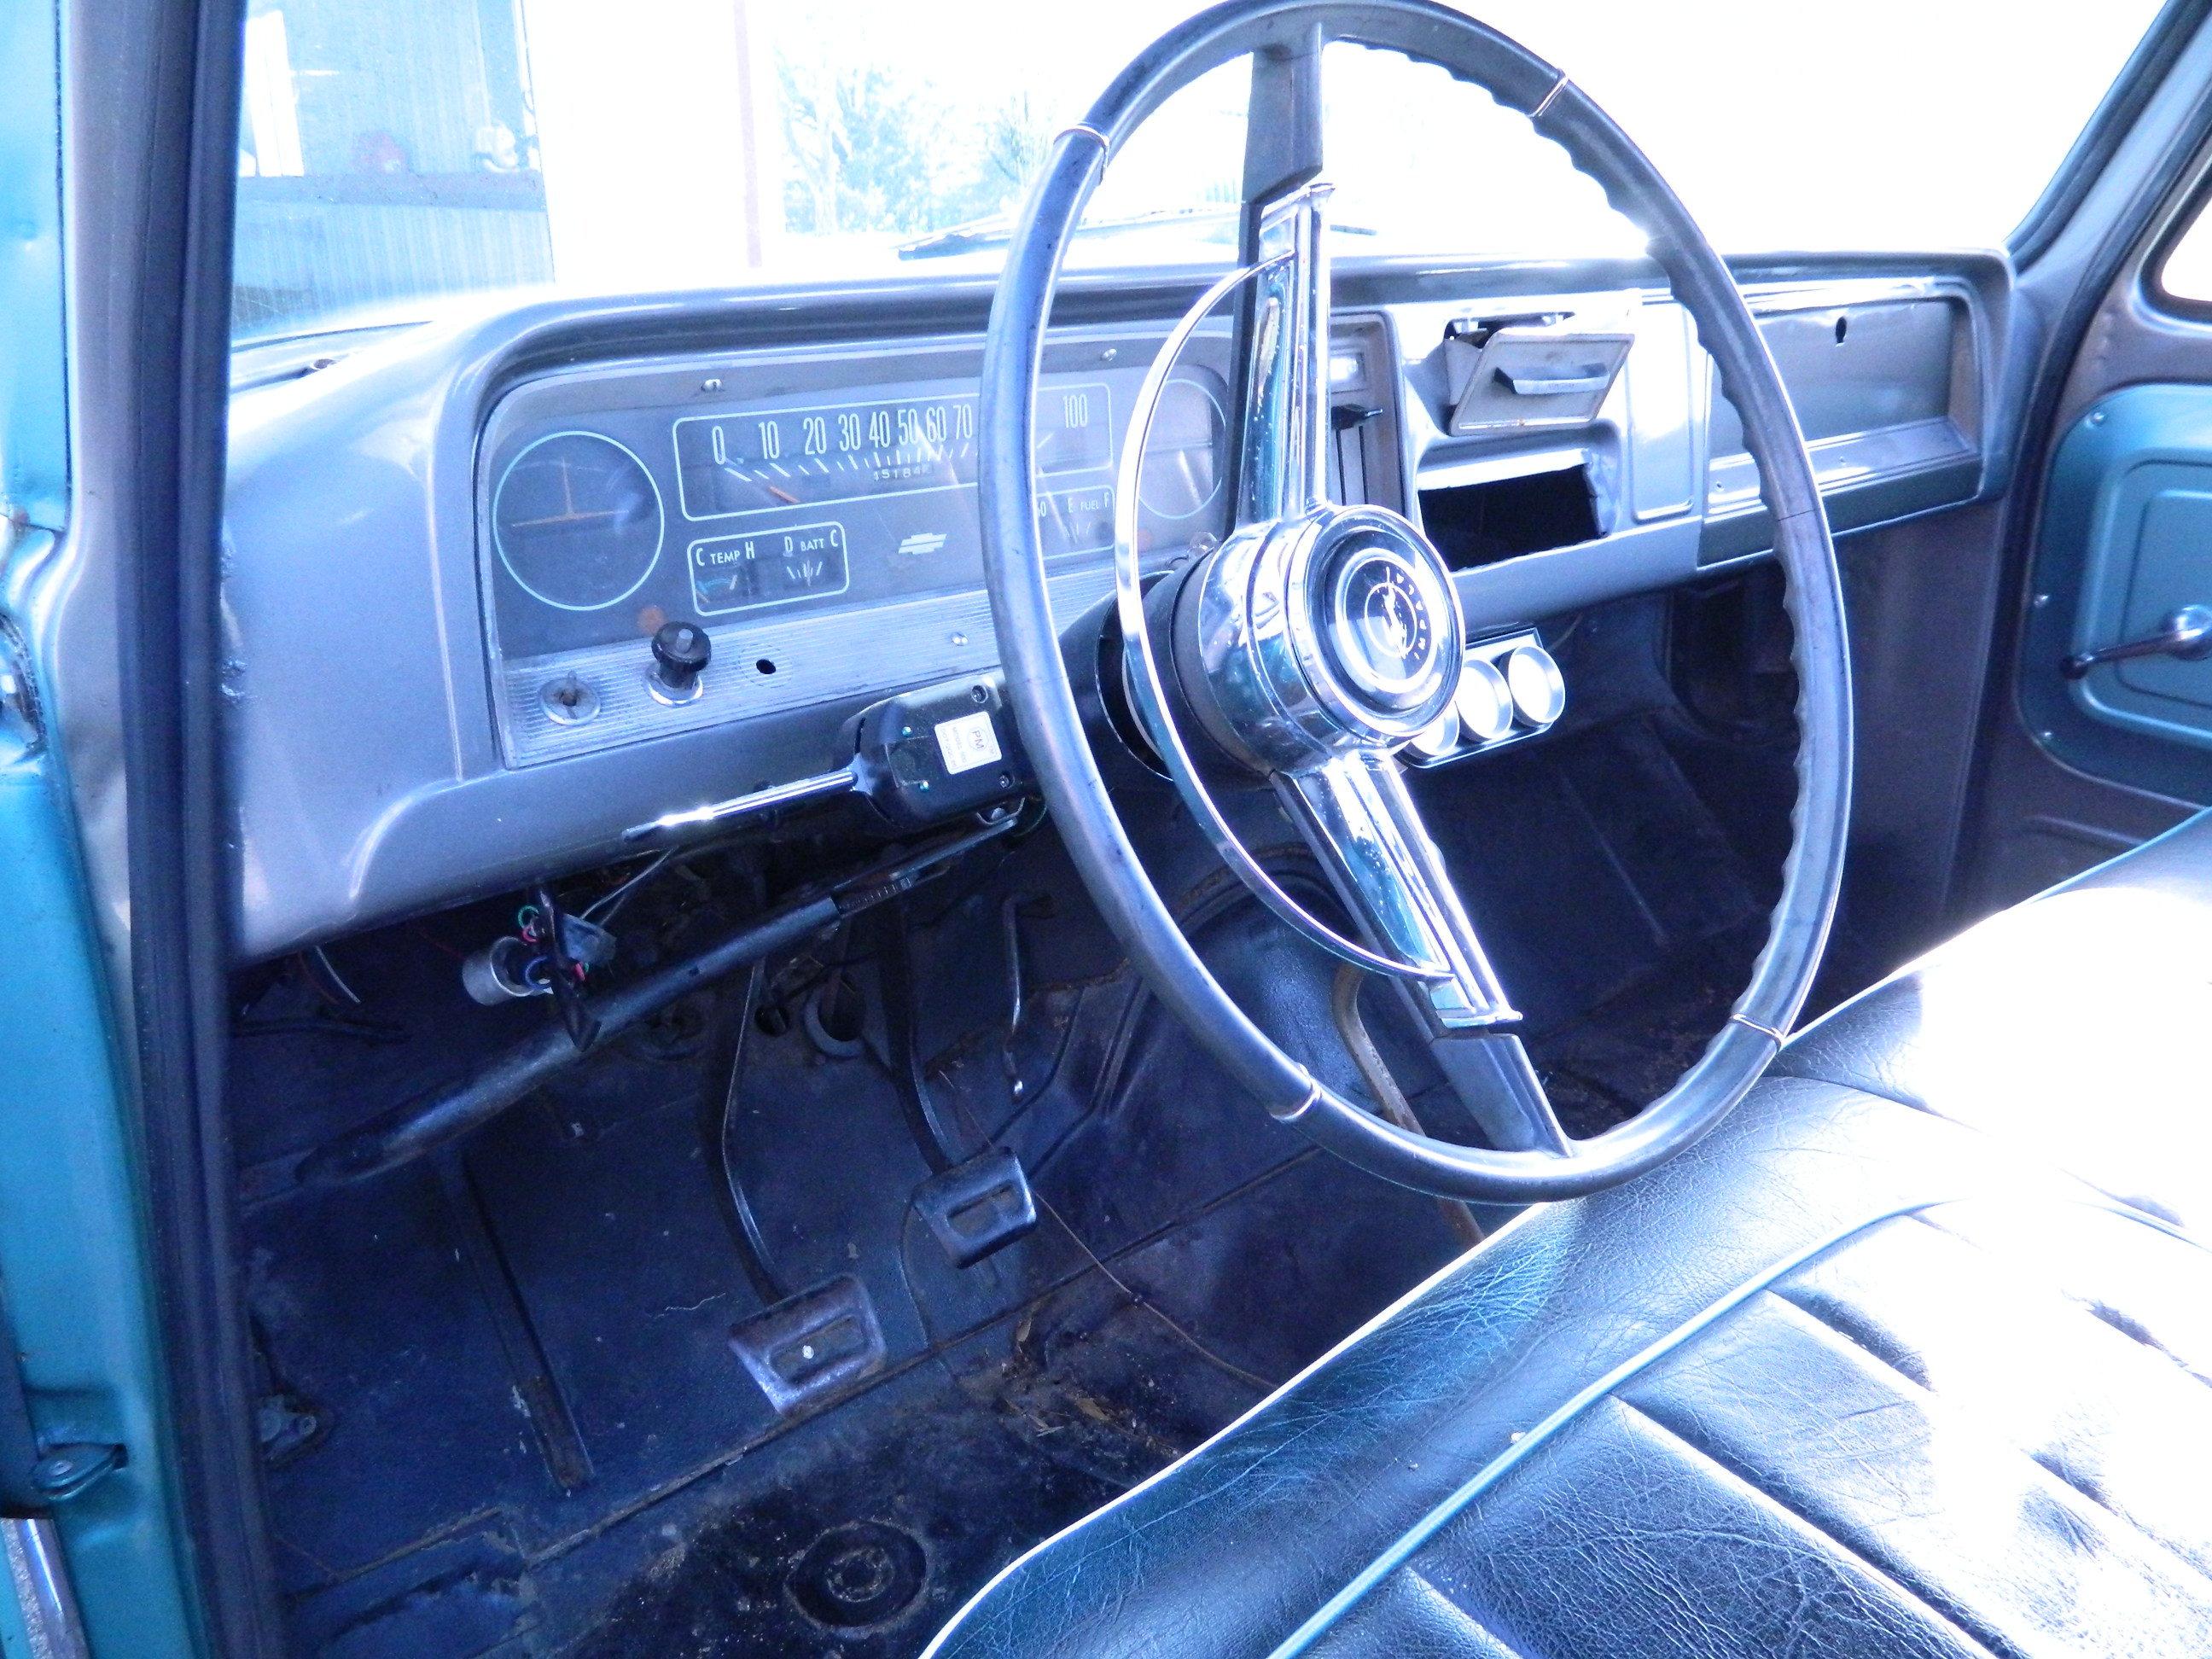 1966 Chevrolet Long Wheel Base Stepside Pick-Up, 283ci/327hp V8, 3 Speed on Floor, Katy Texas Estate